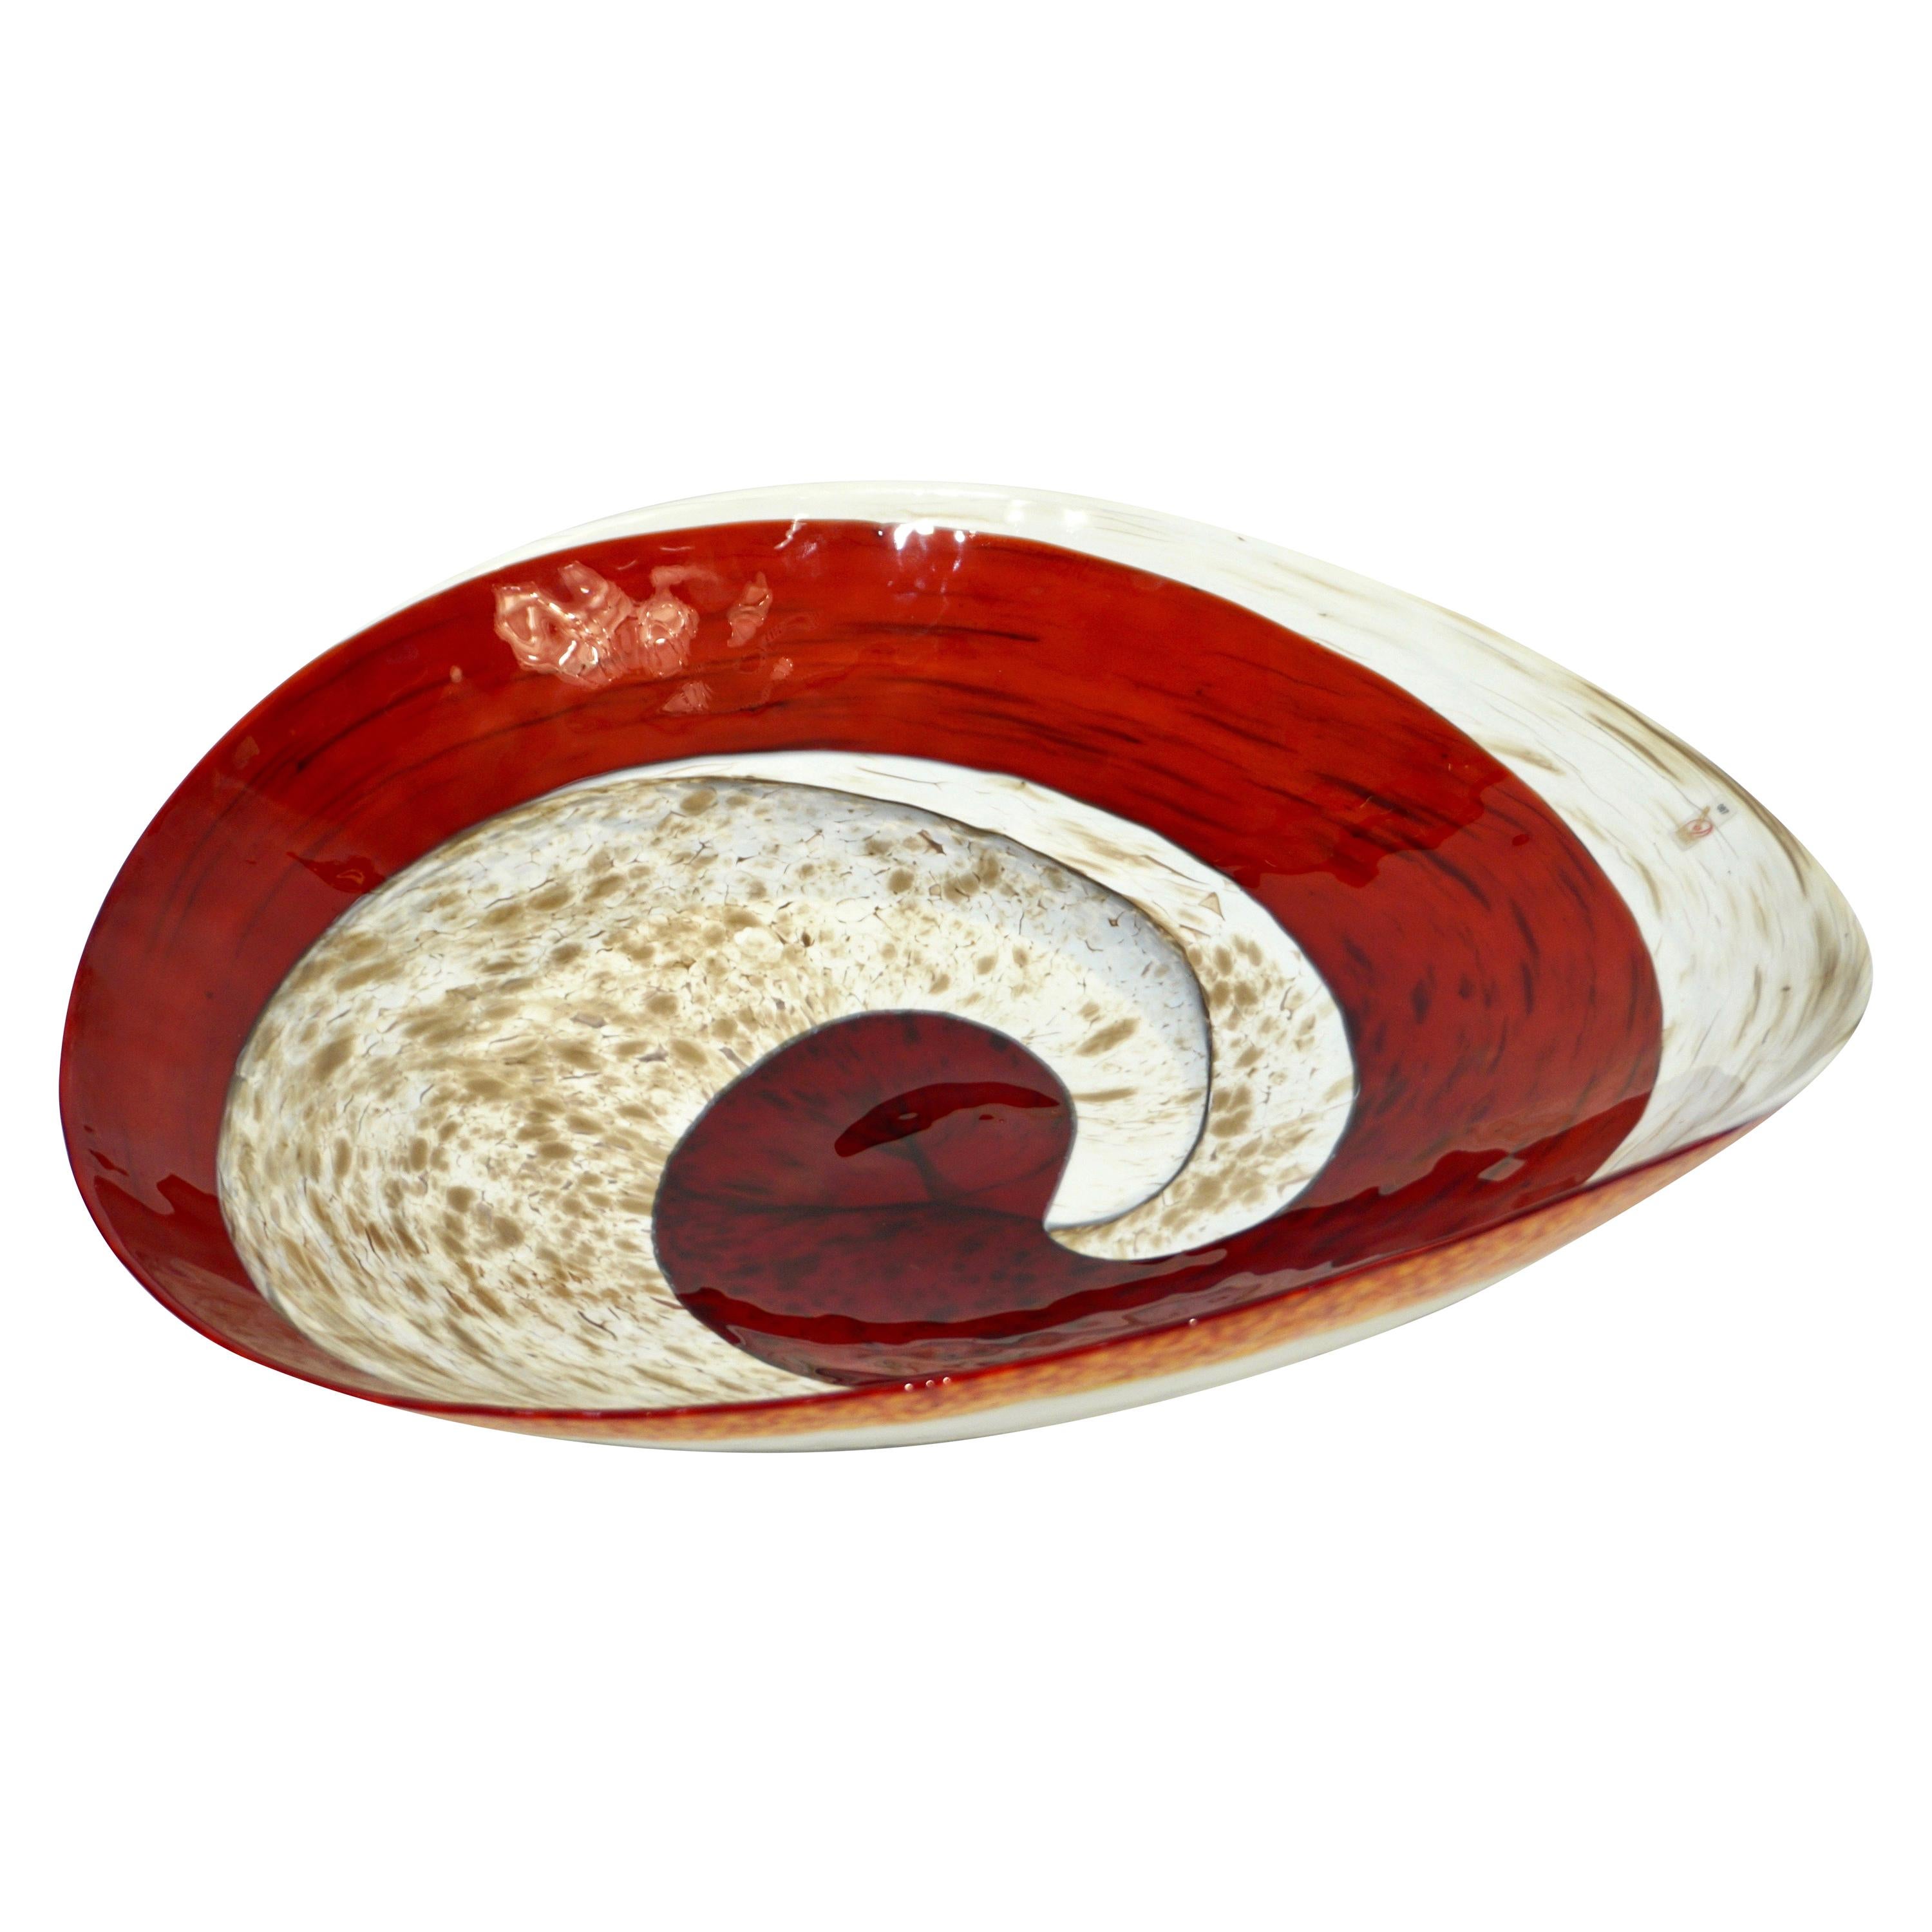 Organic Italian Pearl White Murano Glass Bowl with Swirled Wine Red Murrine